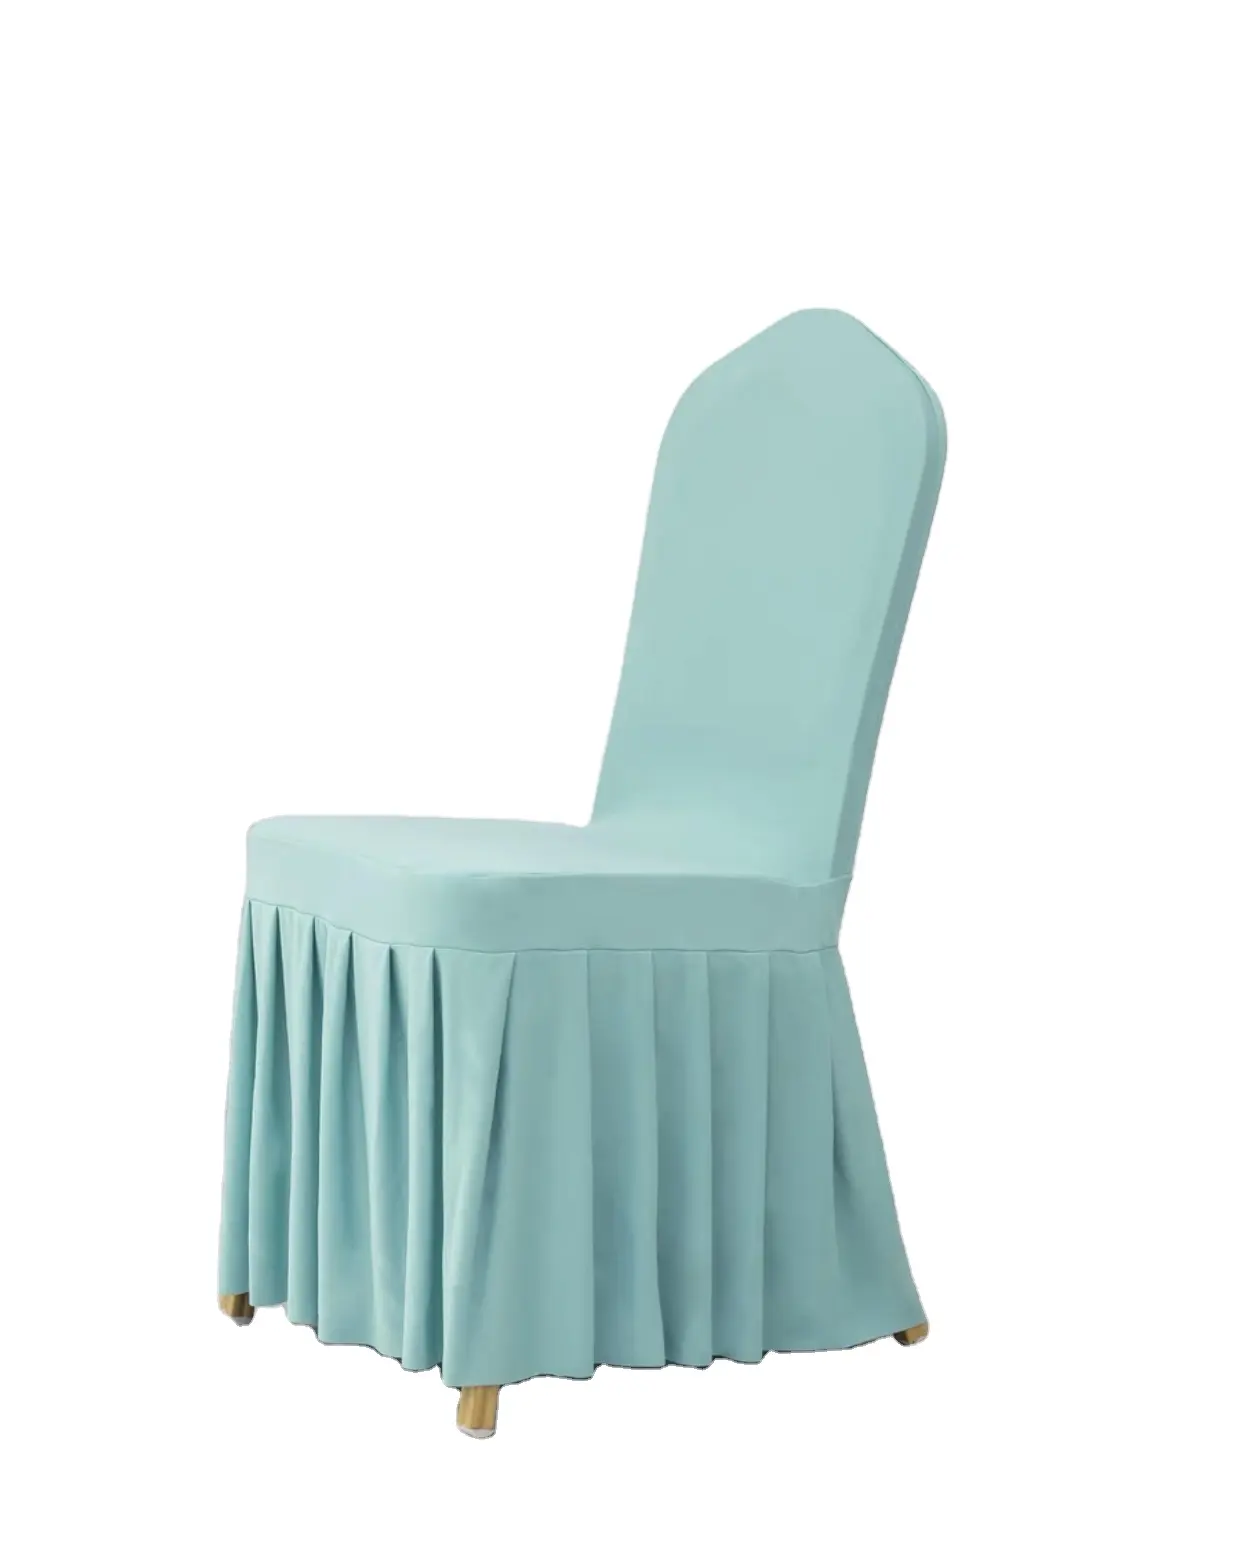 A buon mercato universale elastico in poliestere banchetto bianco gonna di nozze copertura della sedia per sala da pranzo